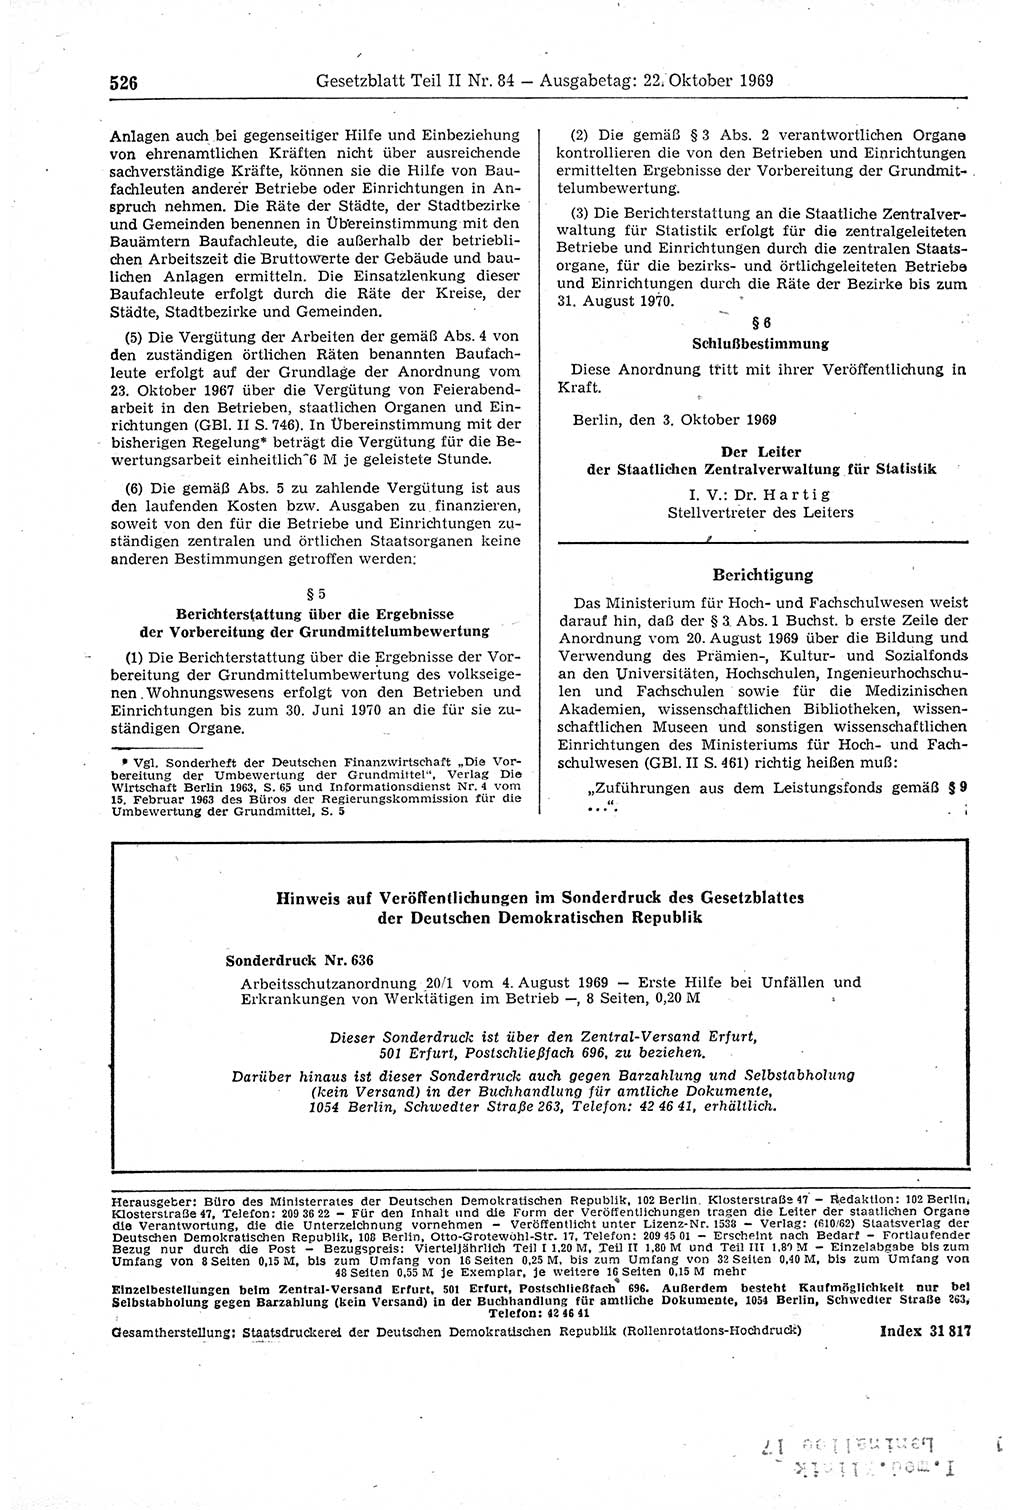 Gesetzblatt (GBl.) der Deutschen Demokratischen Republik (DDR) Teil ⅠⅠ 1969, Seite 526 (GBl. DDR ⅠⅠ 1969, S. 526)